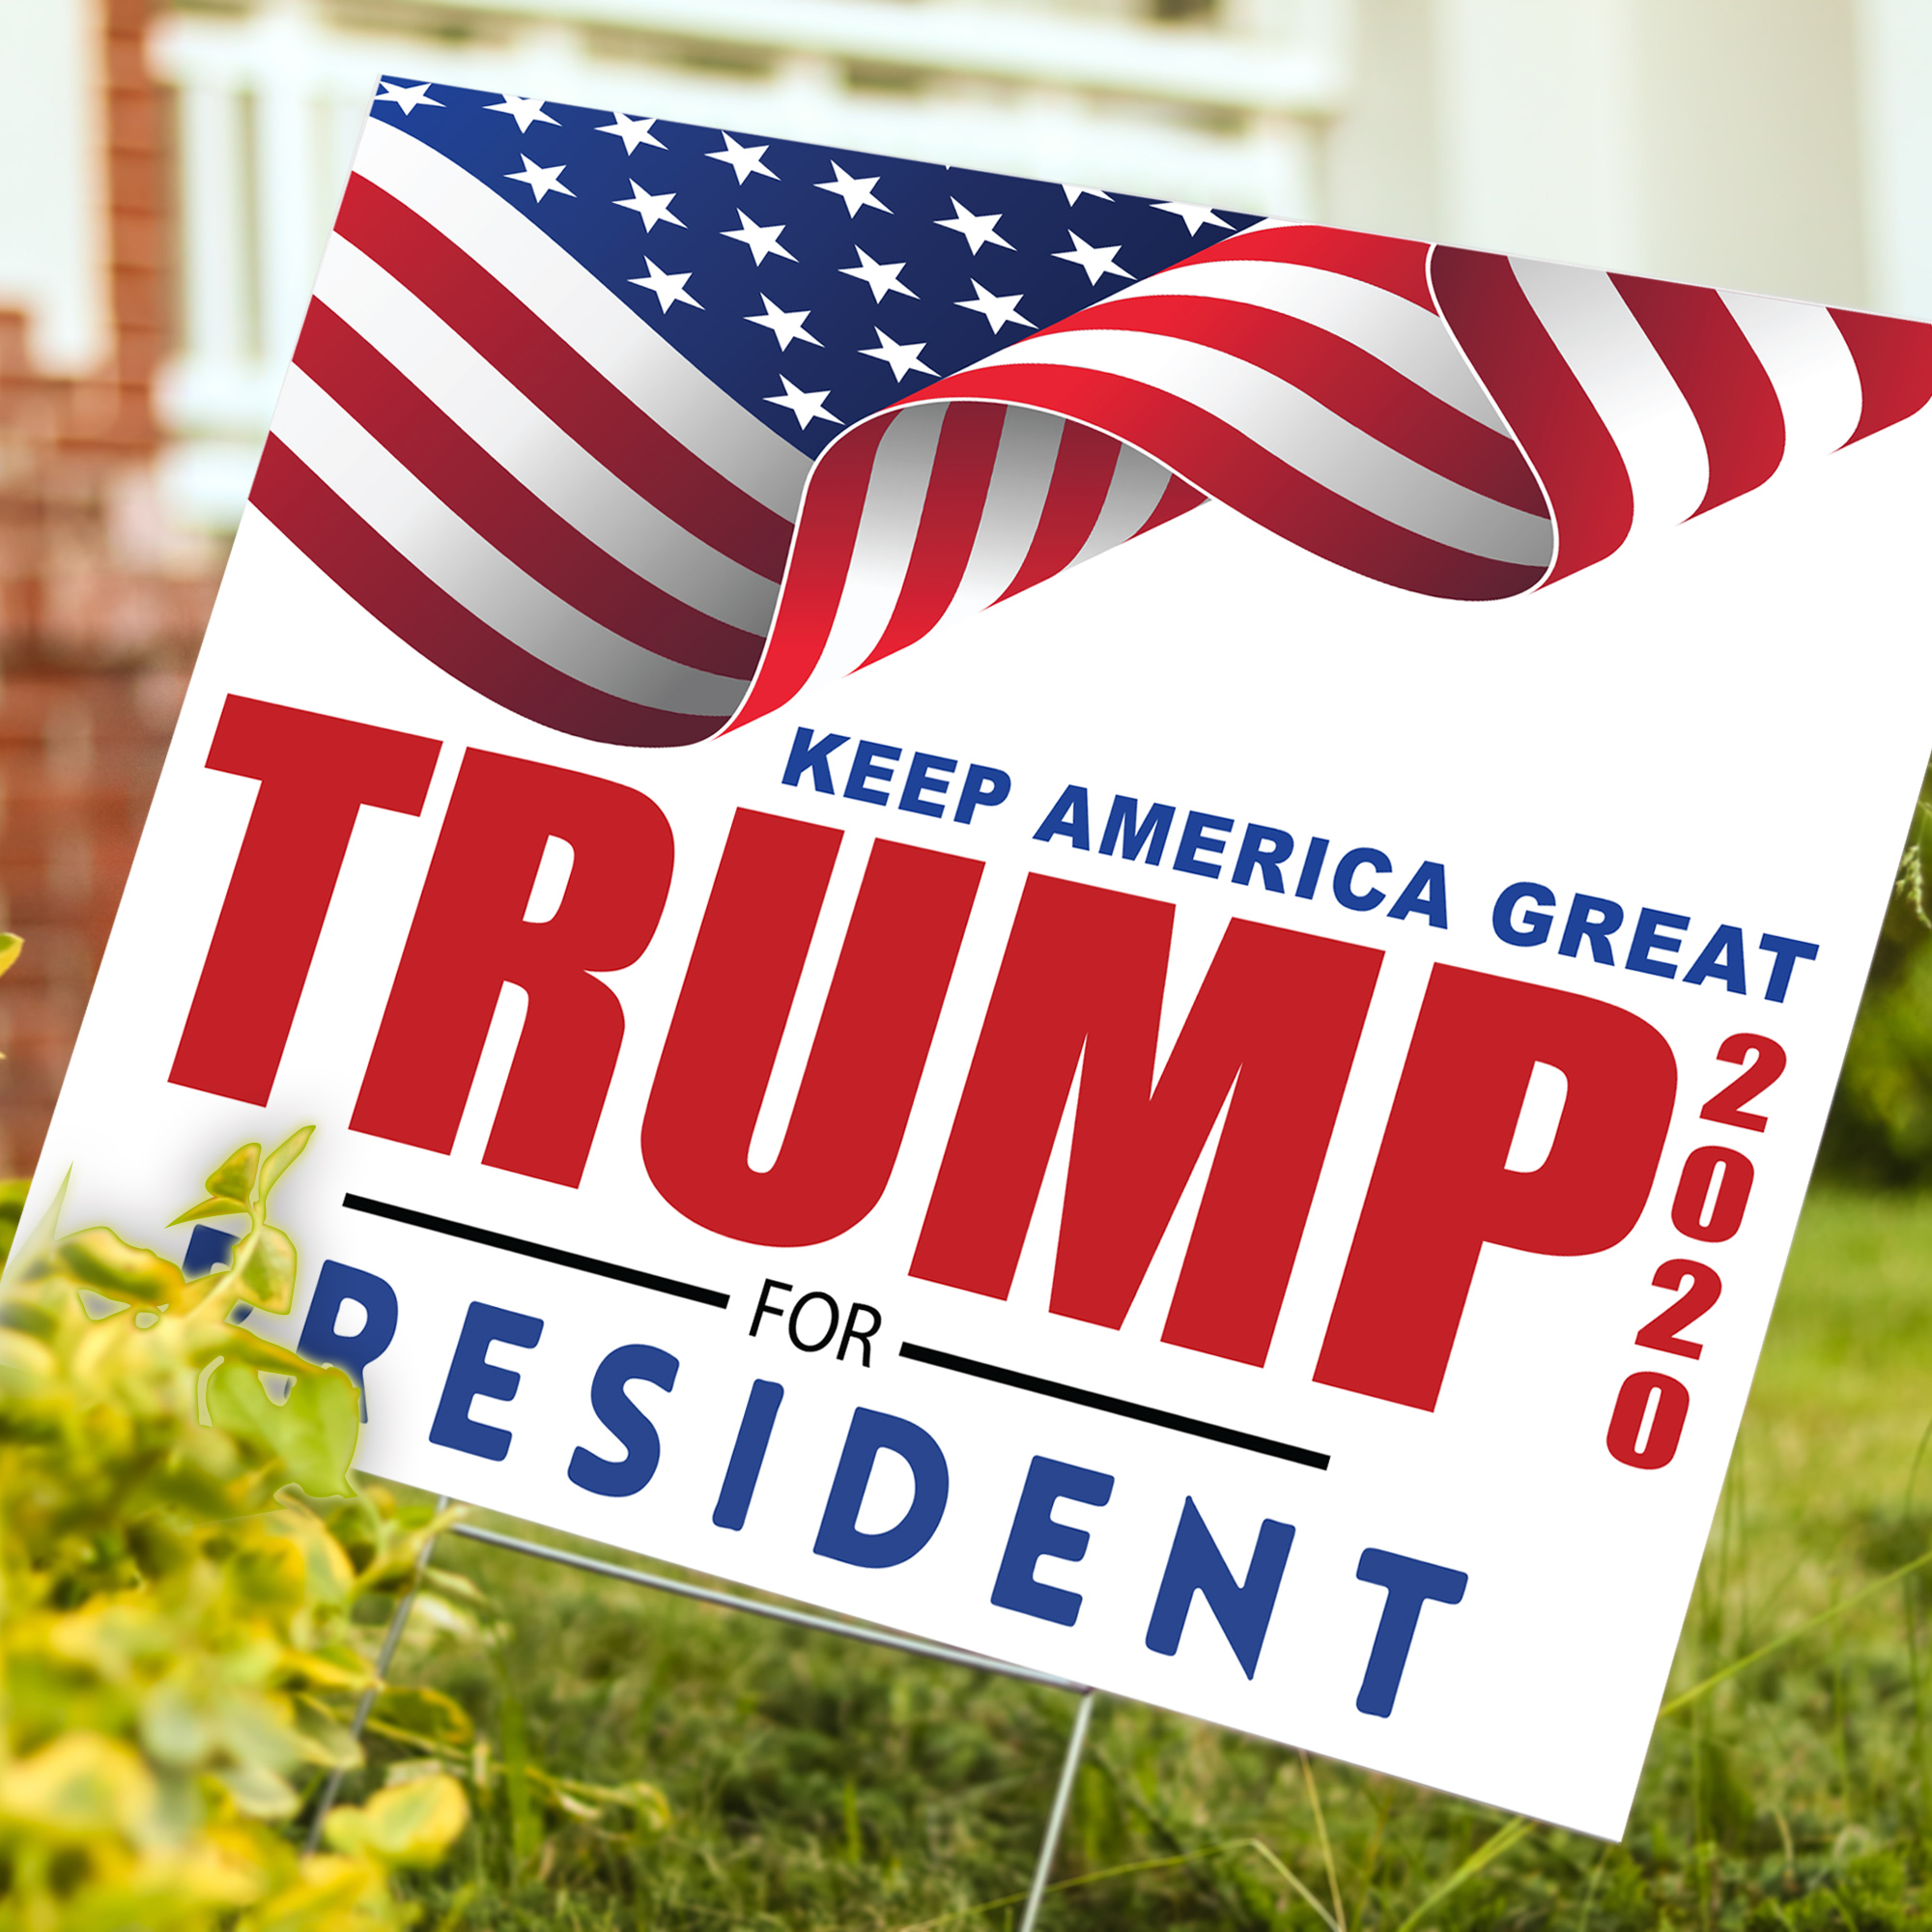 Trump Wavy Flag 2020 Political Yard Sign - 24 x 18 inch